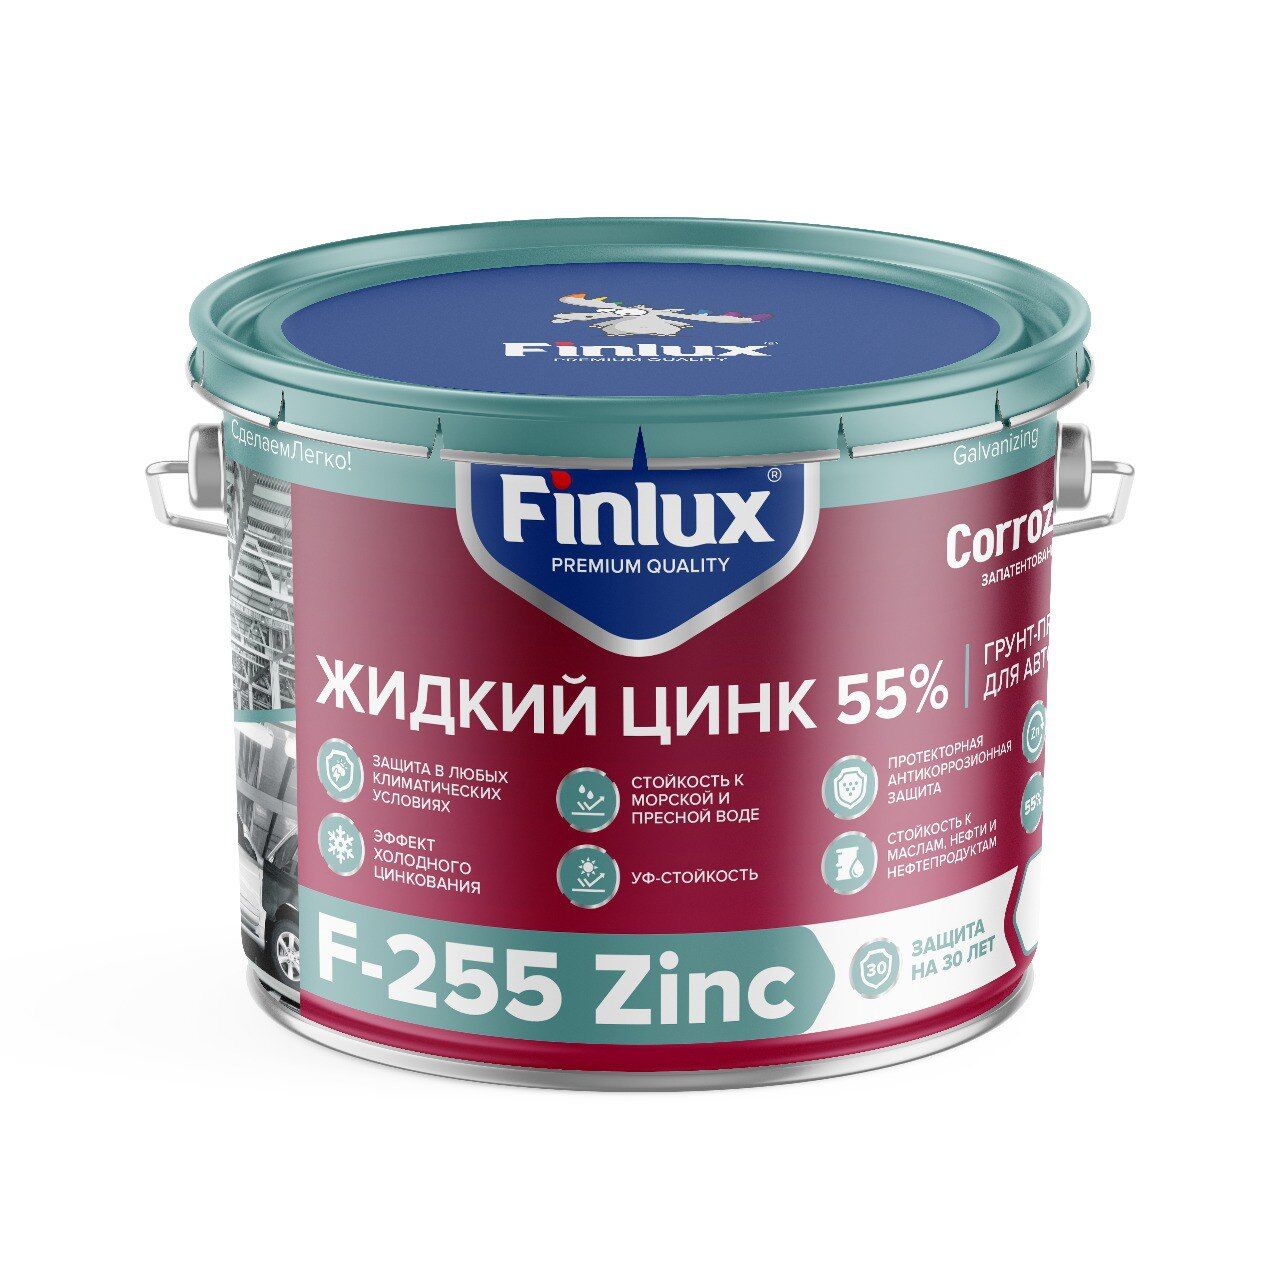 Цинконаполненный грунт-протектор для антикоррозионной защиты металла от ржавчины Finlux F-255 Zinc CorrozoStop 2 кг